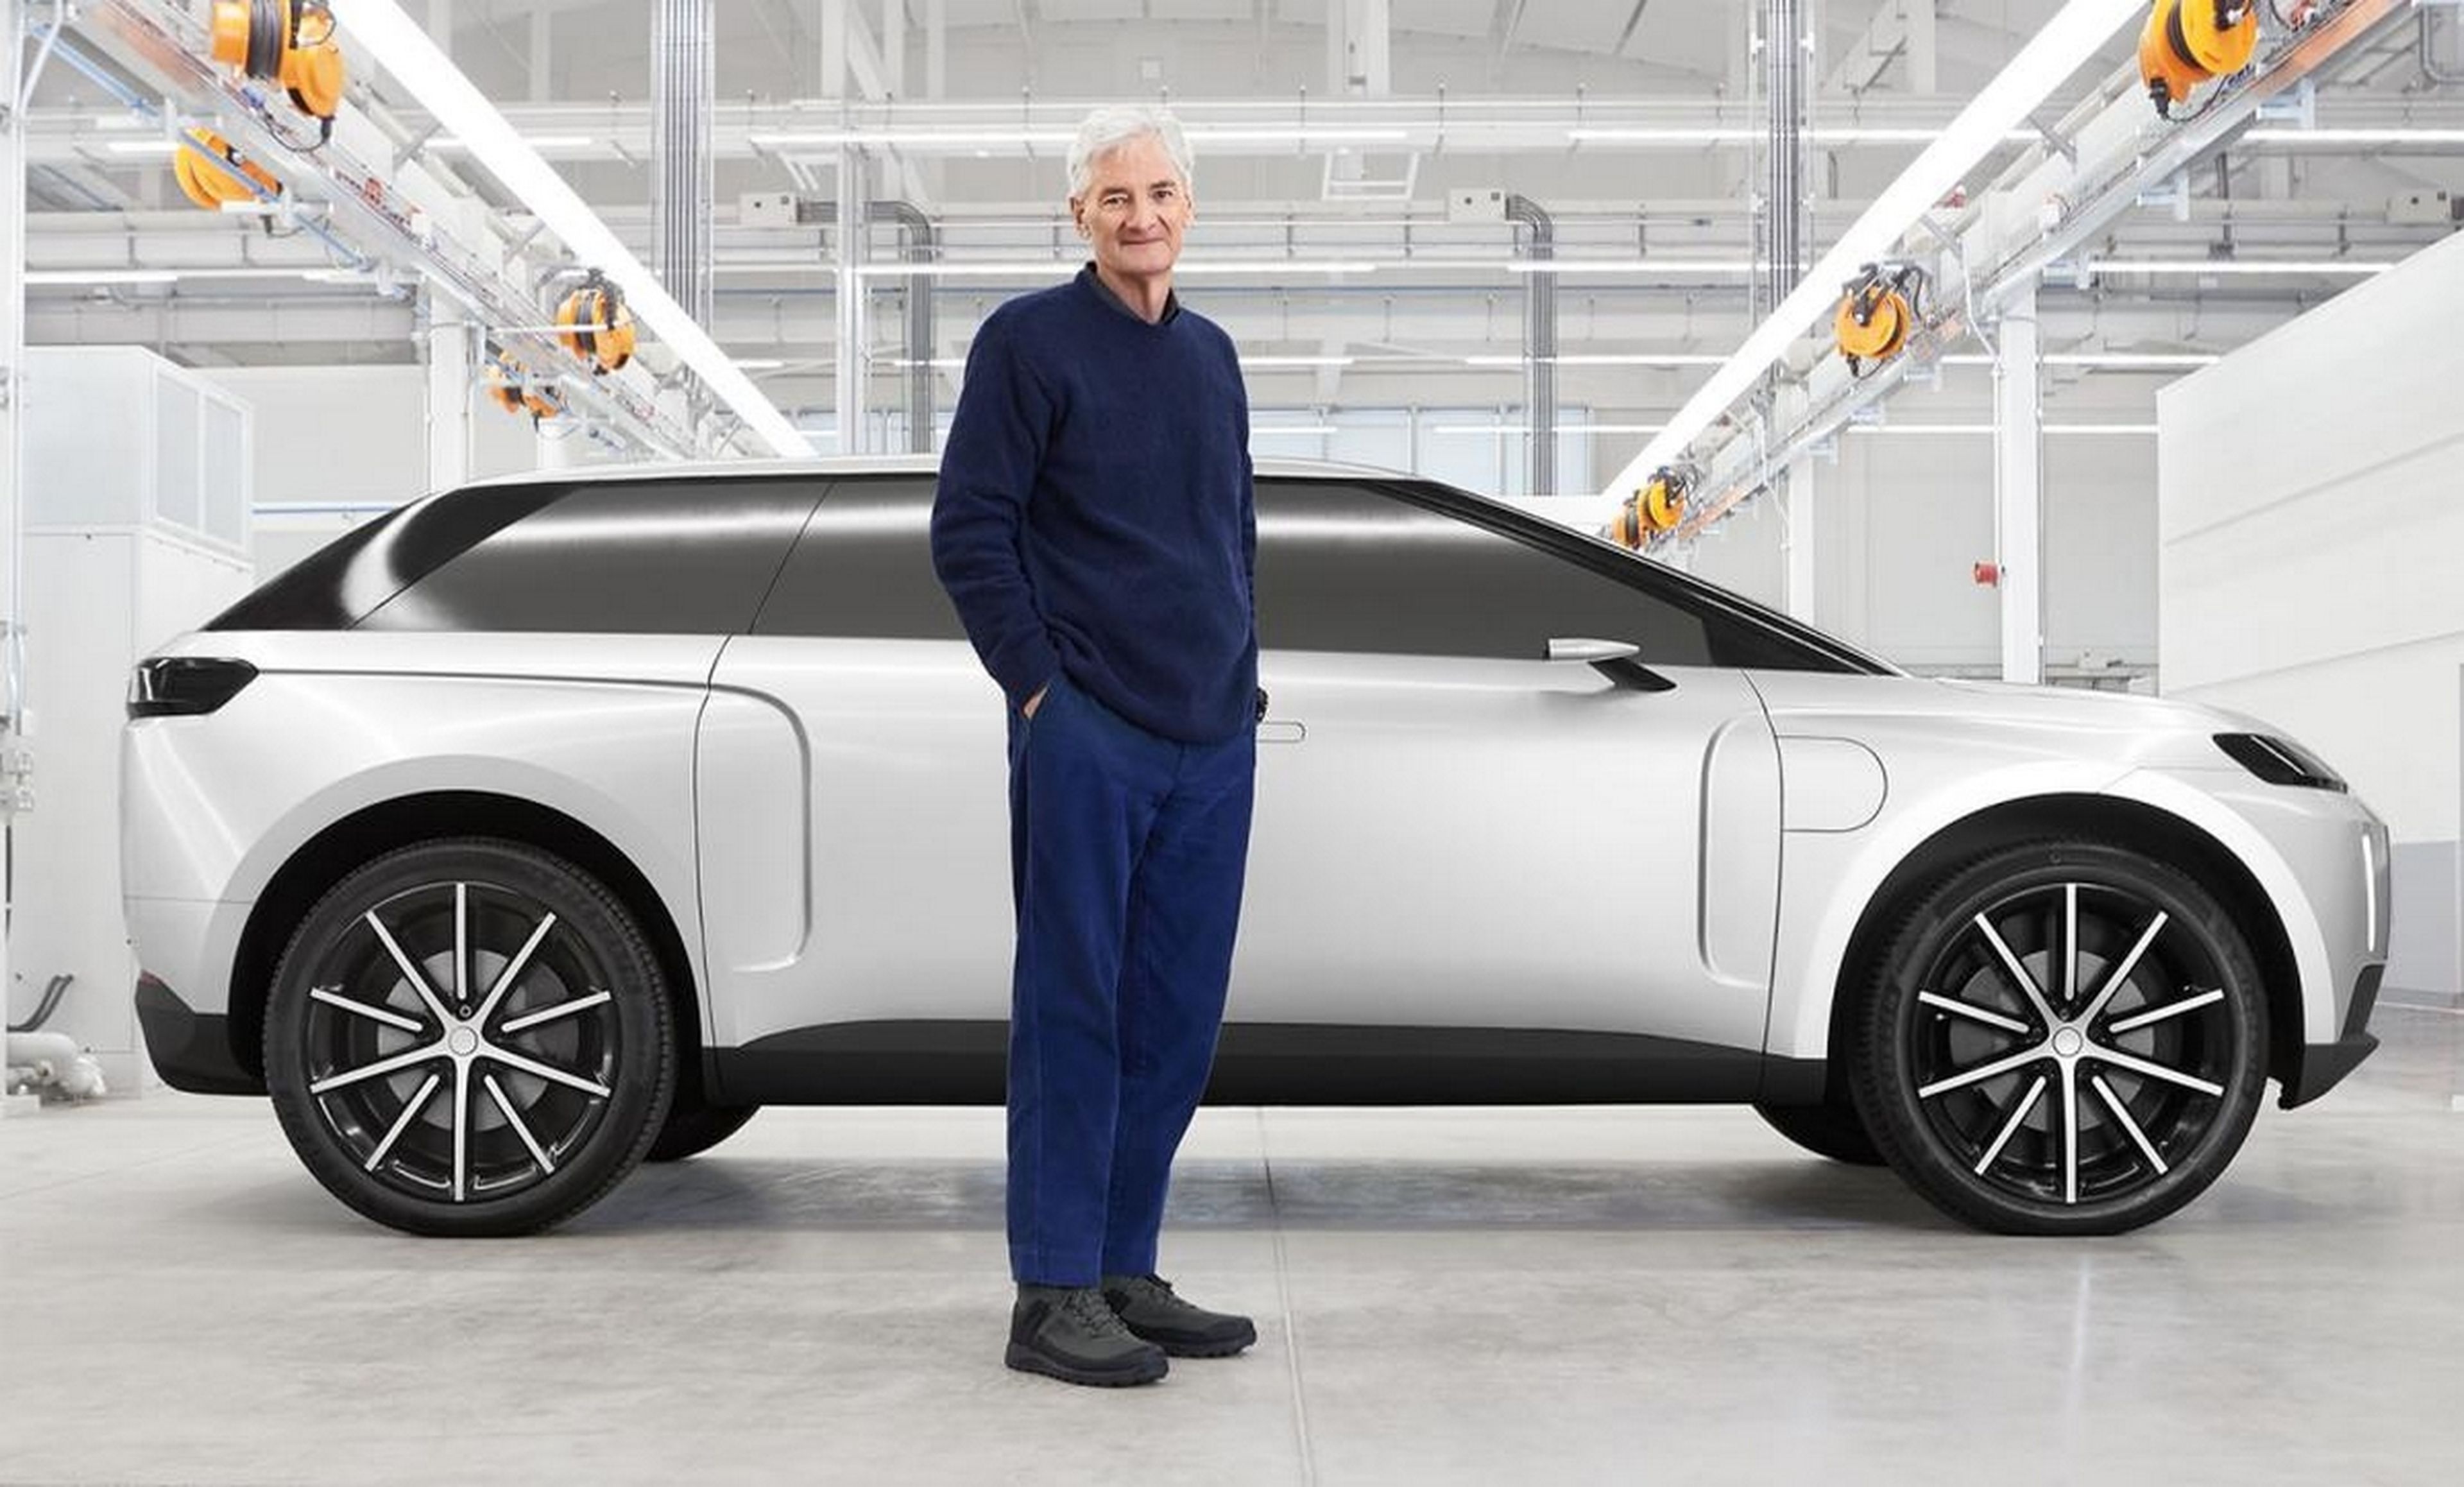 El popular fabricante de aspiradoras Dyson muestra su coche eléctrico cancelado, que iba a superar a Tesla